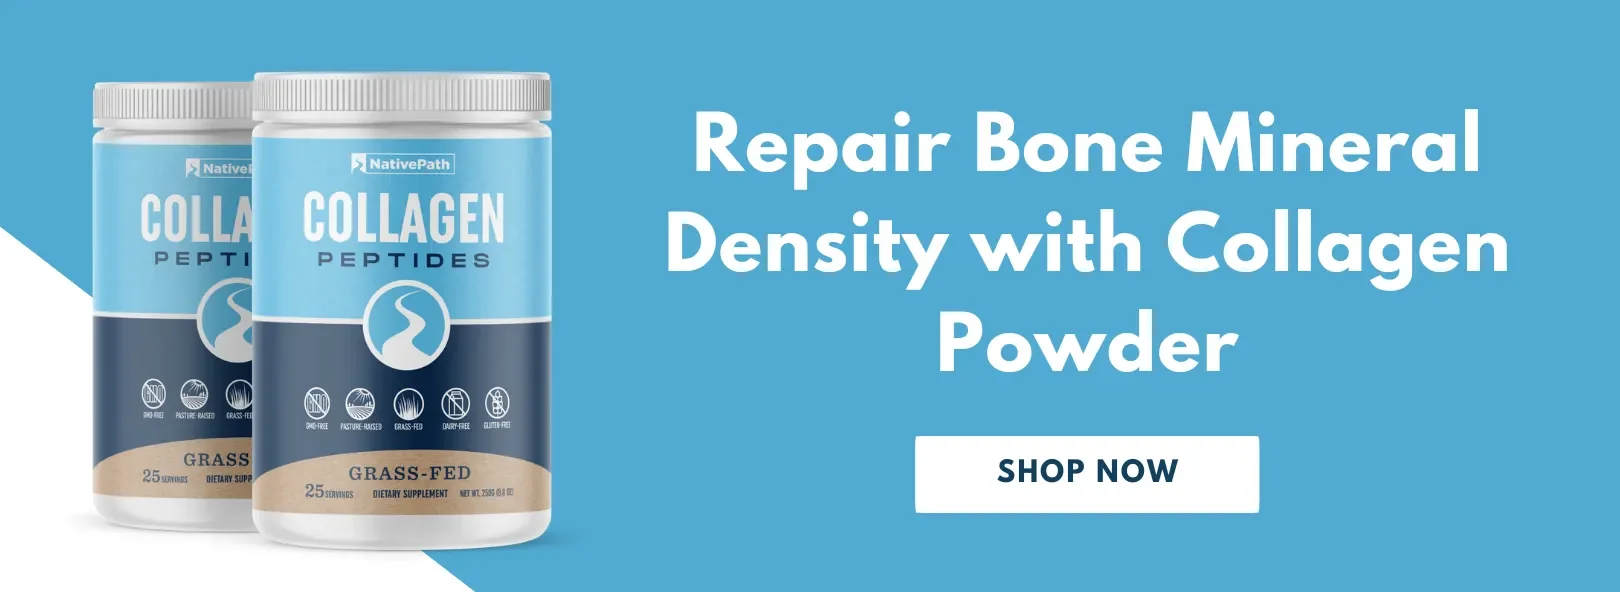 Repair Bone Mineral Density with NativePath Collagen Powder